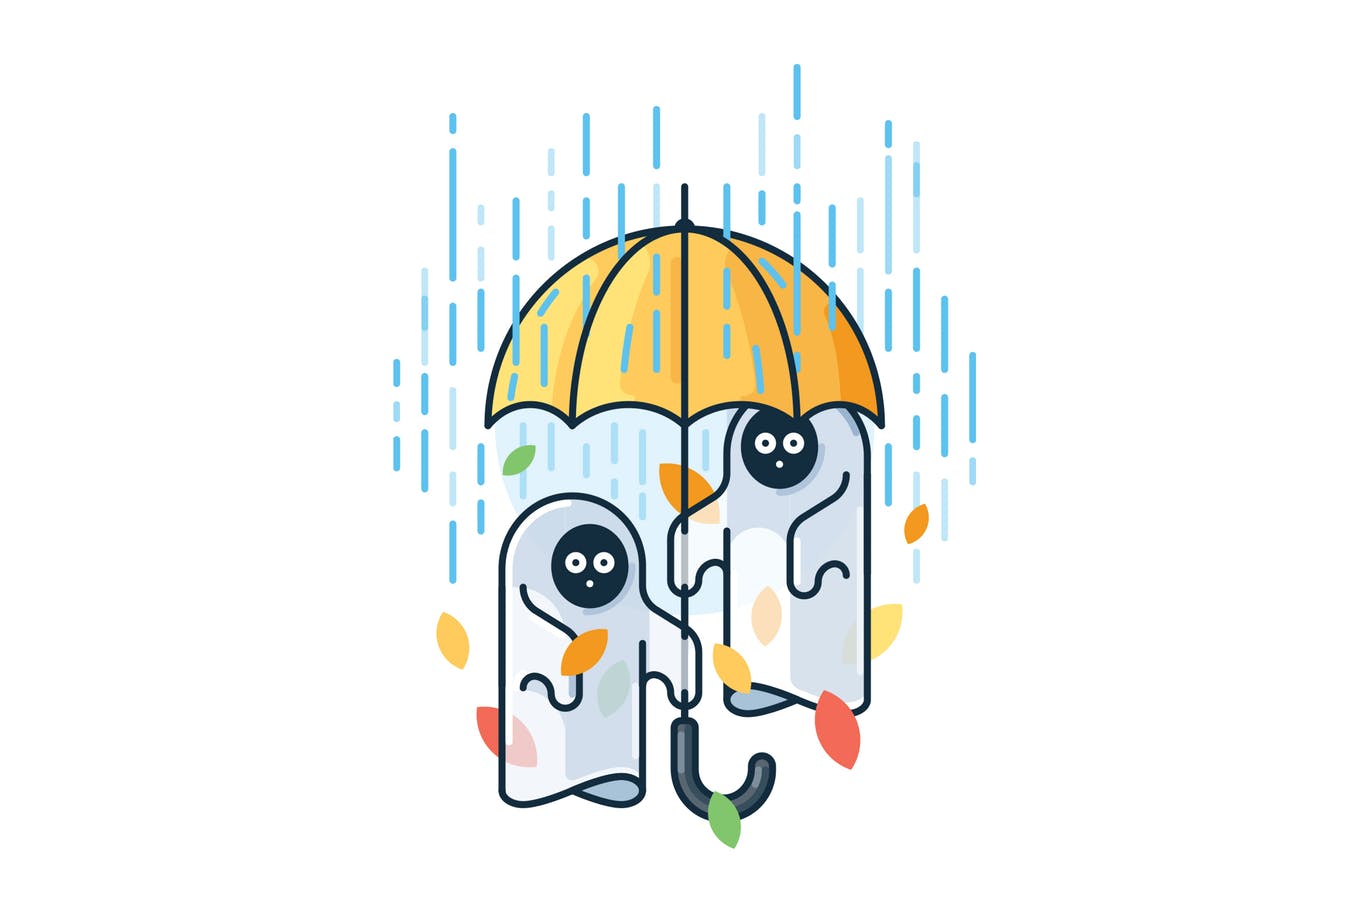 雨中的鬼魂简约线条大洋岛精选手绘插画矢量素材 Ghosts in the rain插图